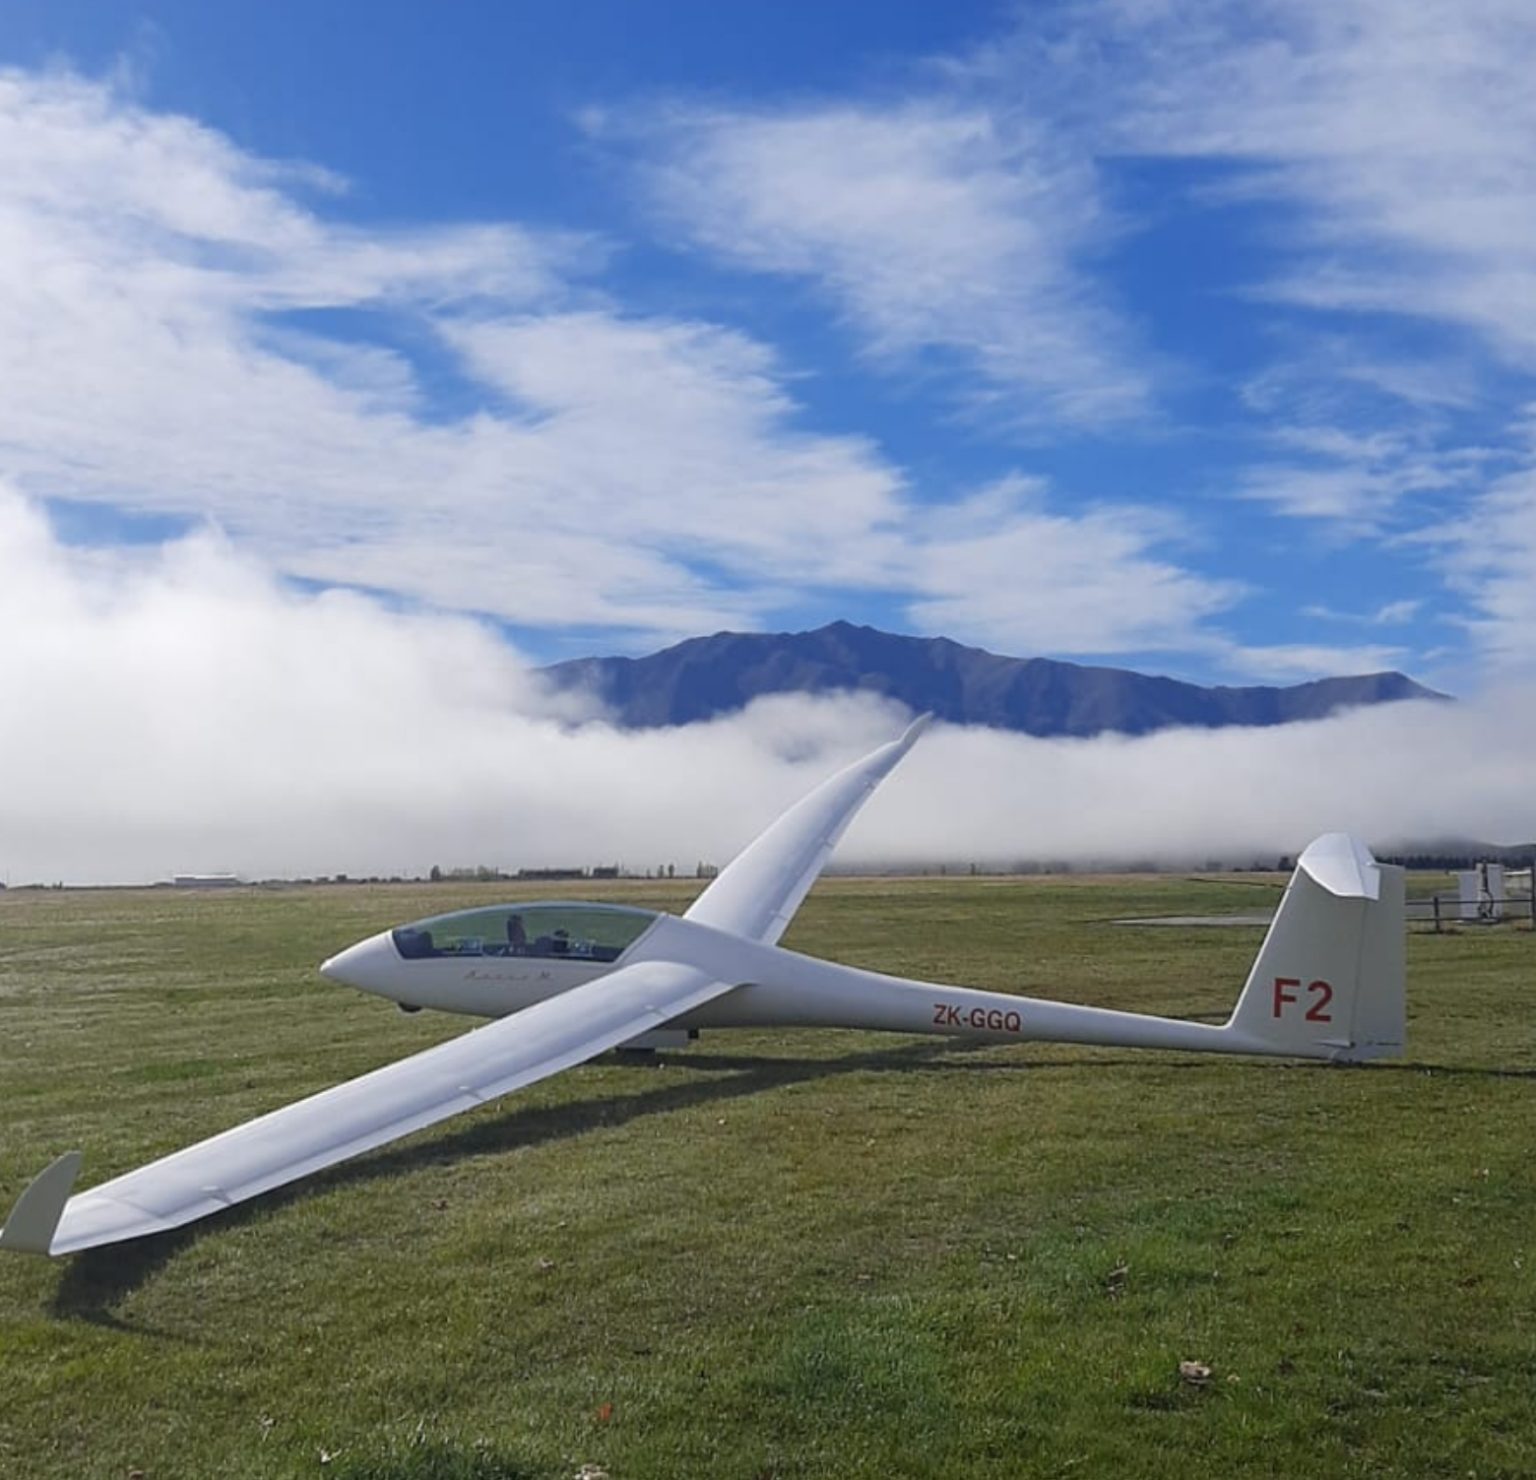 Glider at Omarama air field